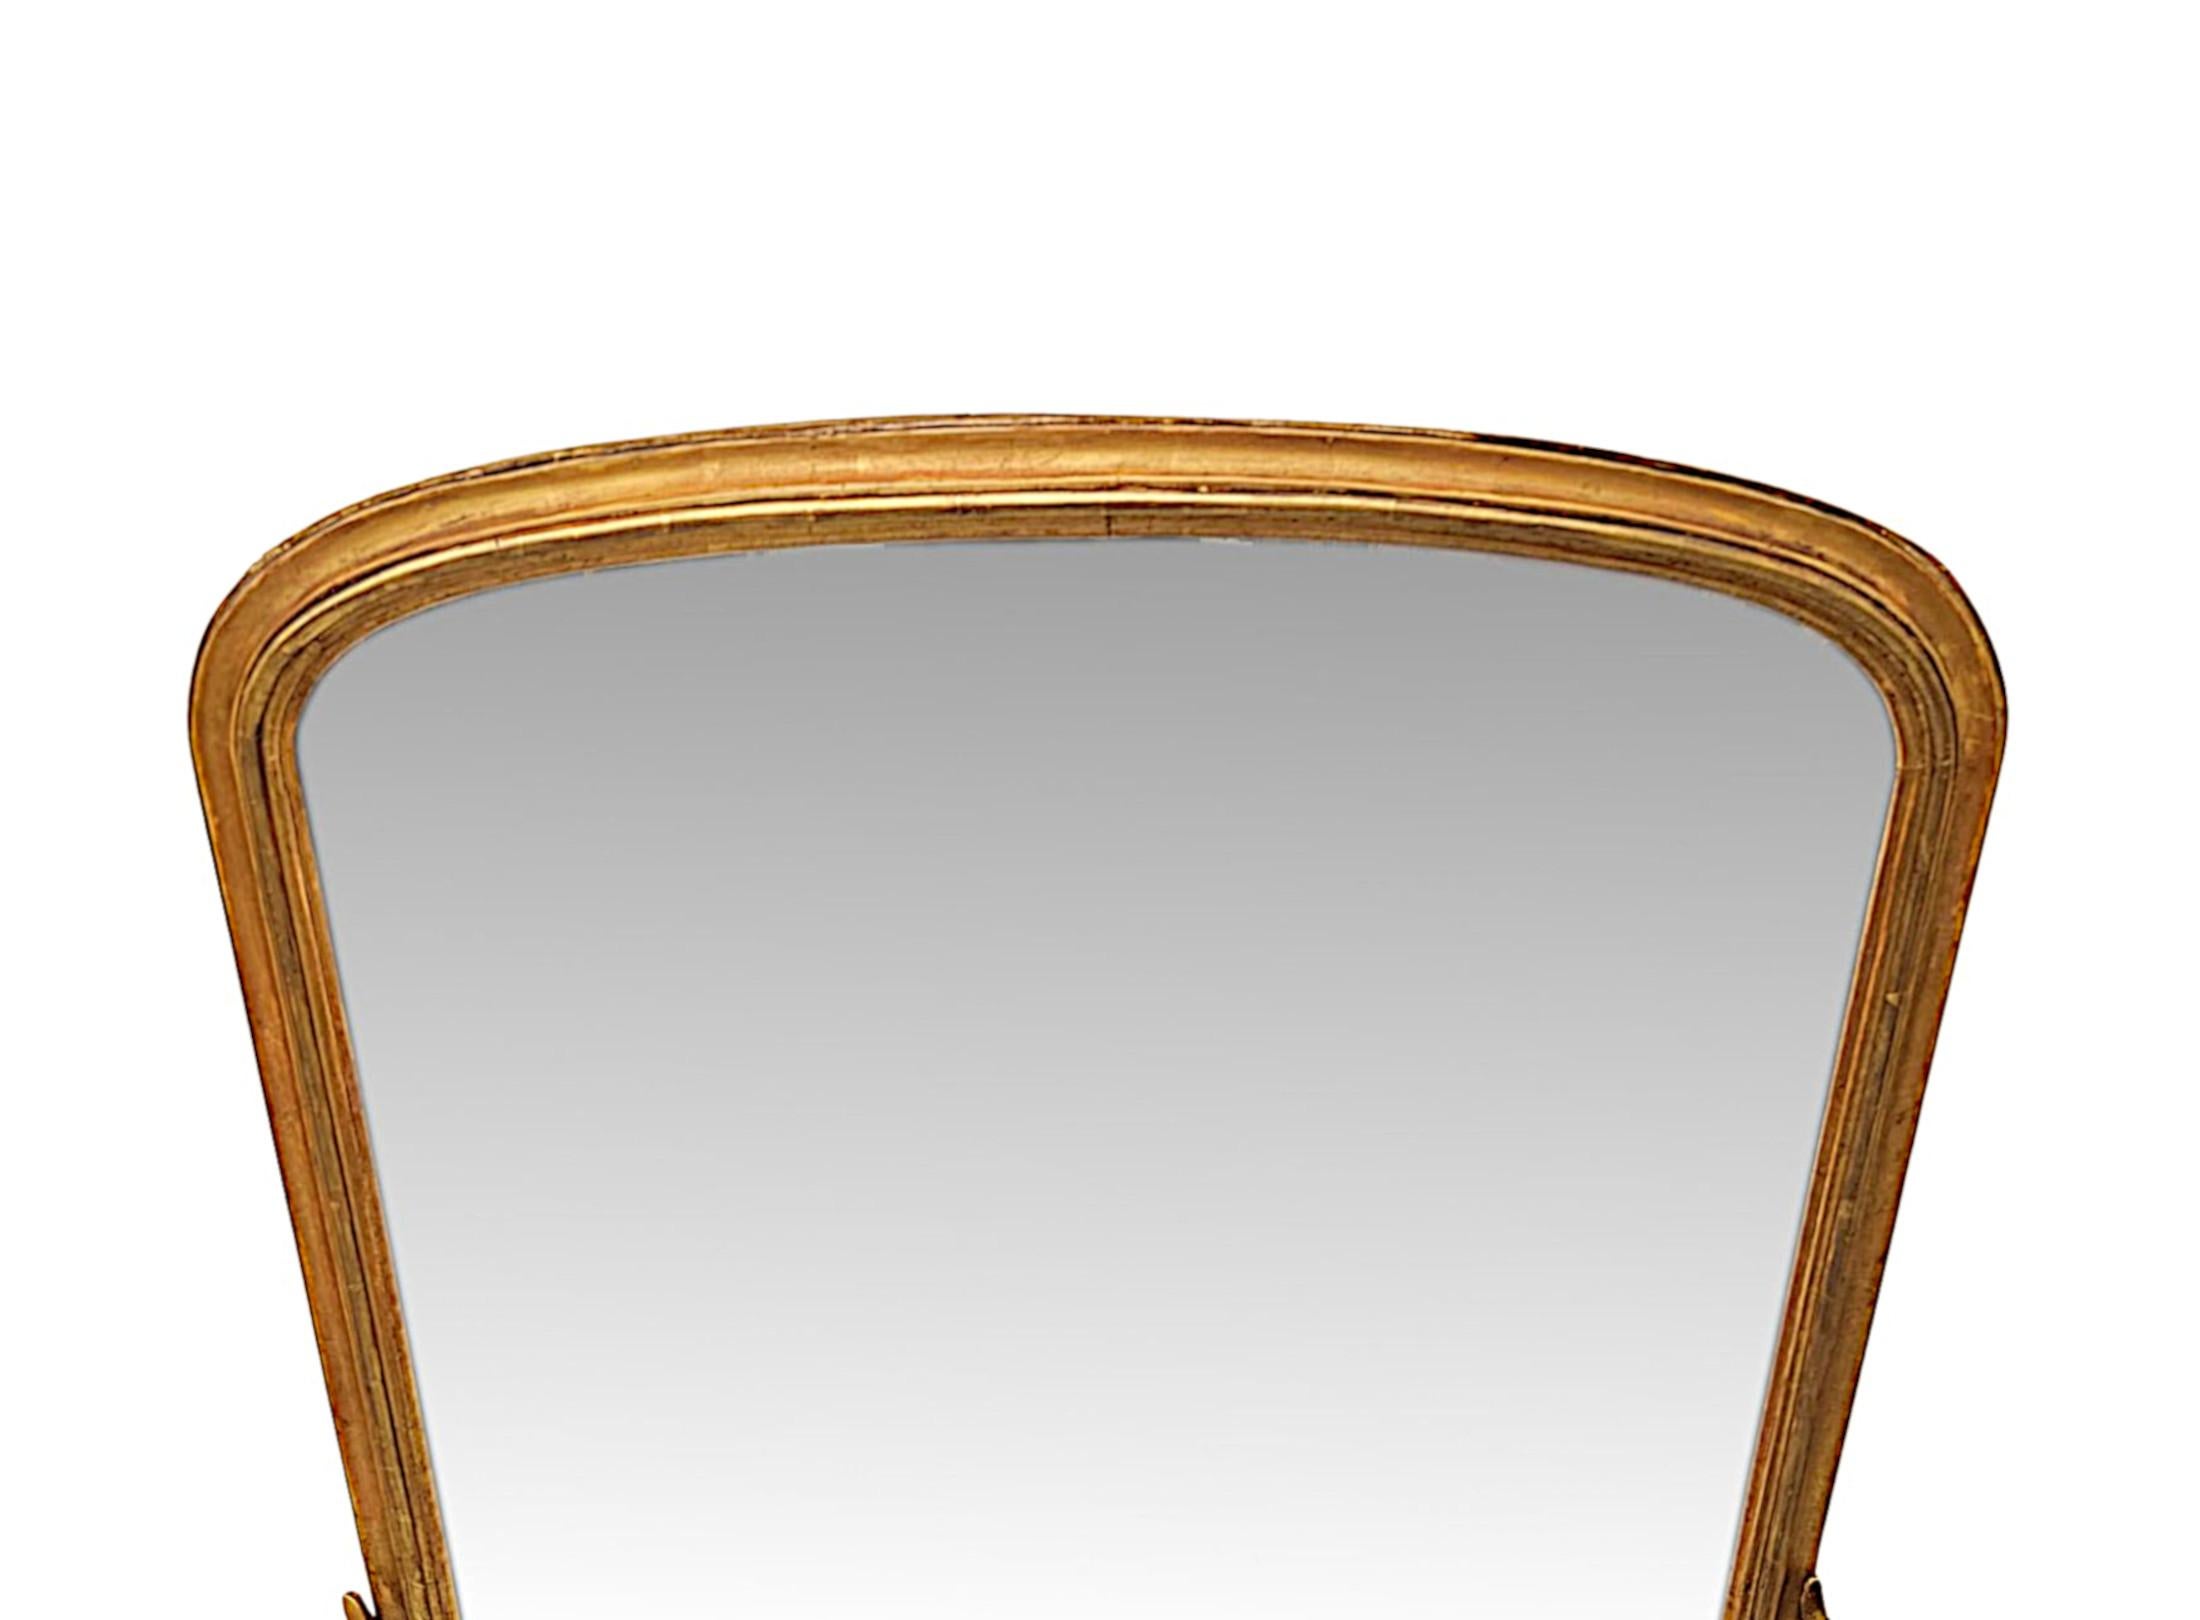 Un fabuleux miroir à trumeau en bois doré du XIXe siècle, aux proportions soignées et d'une qualité exceptionnelle.  La plaque de verre en forme de miroir est placée dans un cadre en bois doré finement sculpté à la main, simple, mouluré, cannelé et